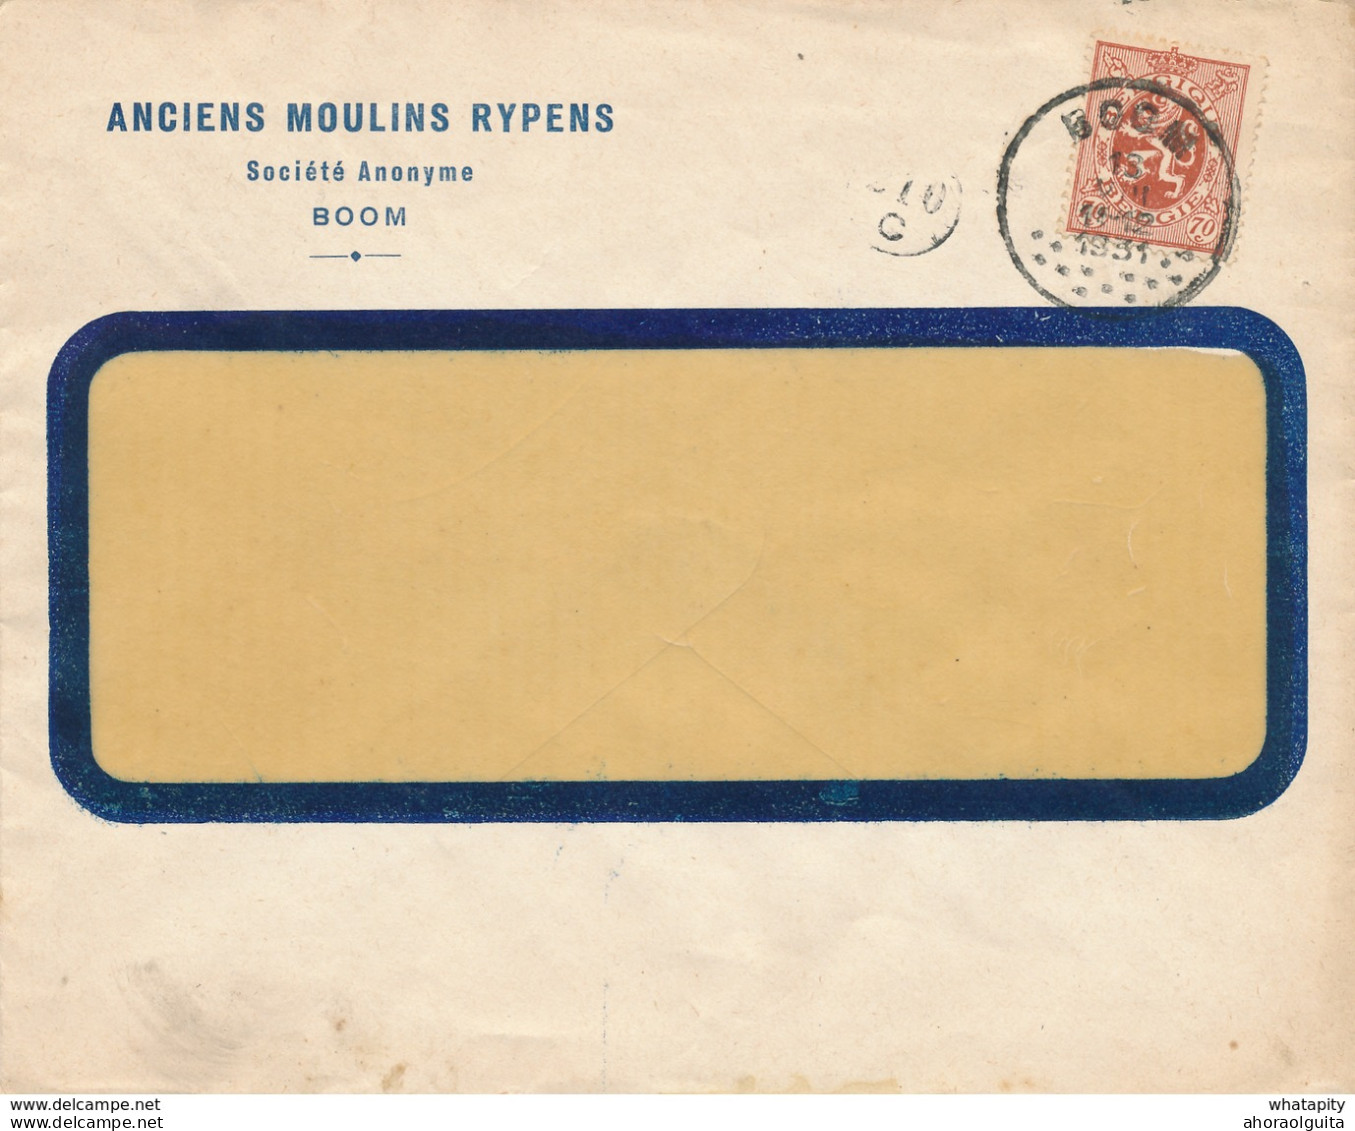 270/28 - Enveloppe TP 287 Lion Héraldique BOOM 1931 Vers BXL - Entete Anciens Moulins Rypens S.A. - 1929-1937 Heraldic Lion